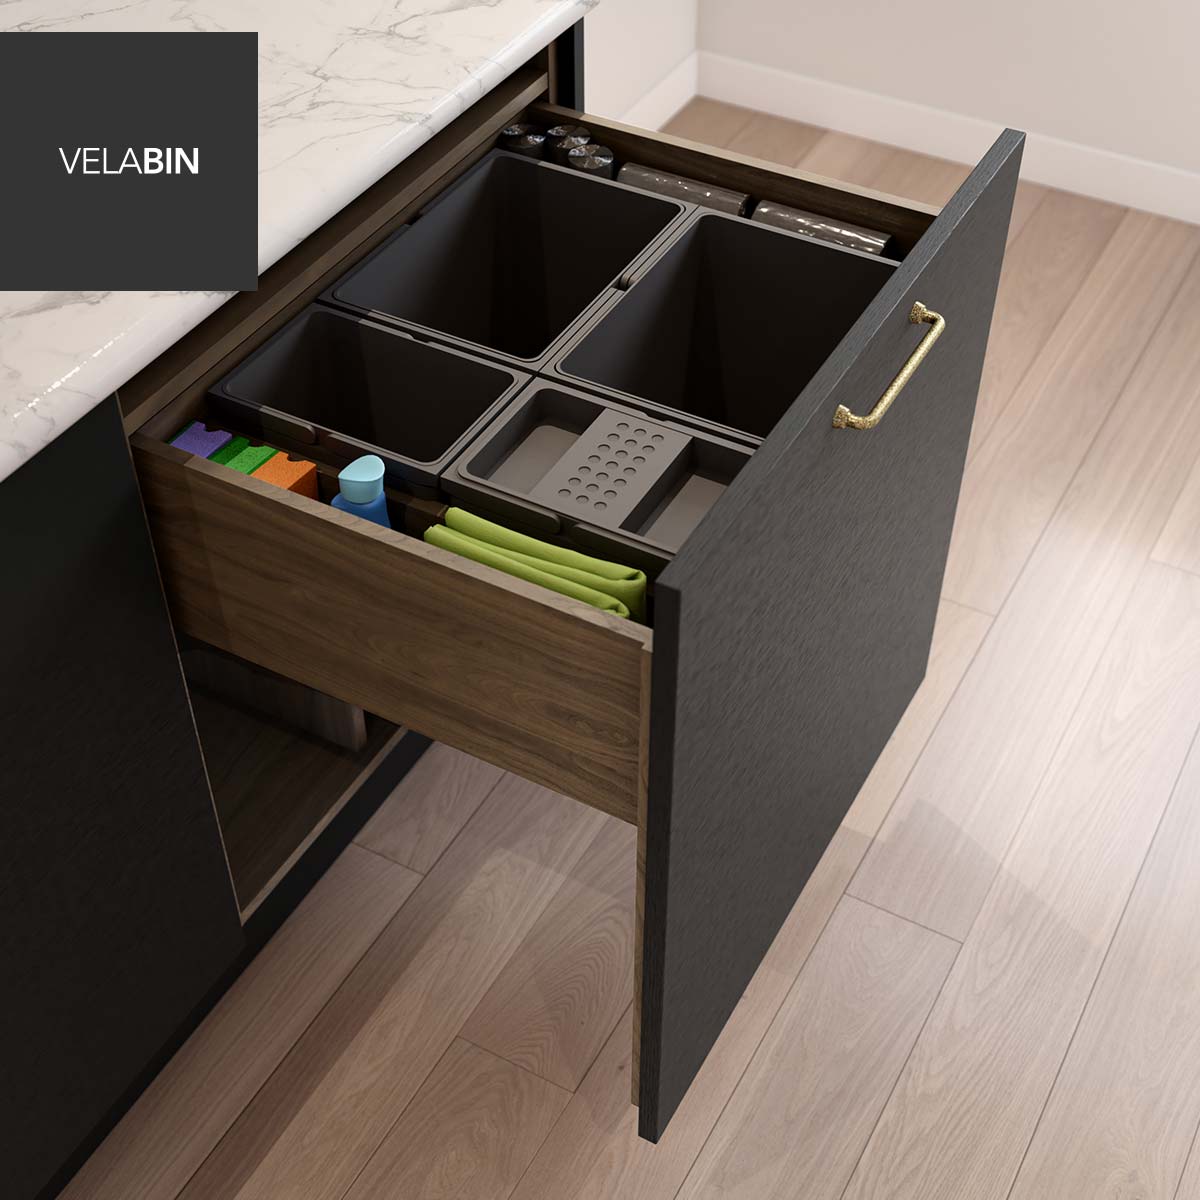 Velabin integrated kitchen bin in Portland Oak